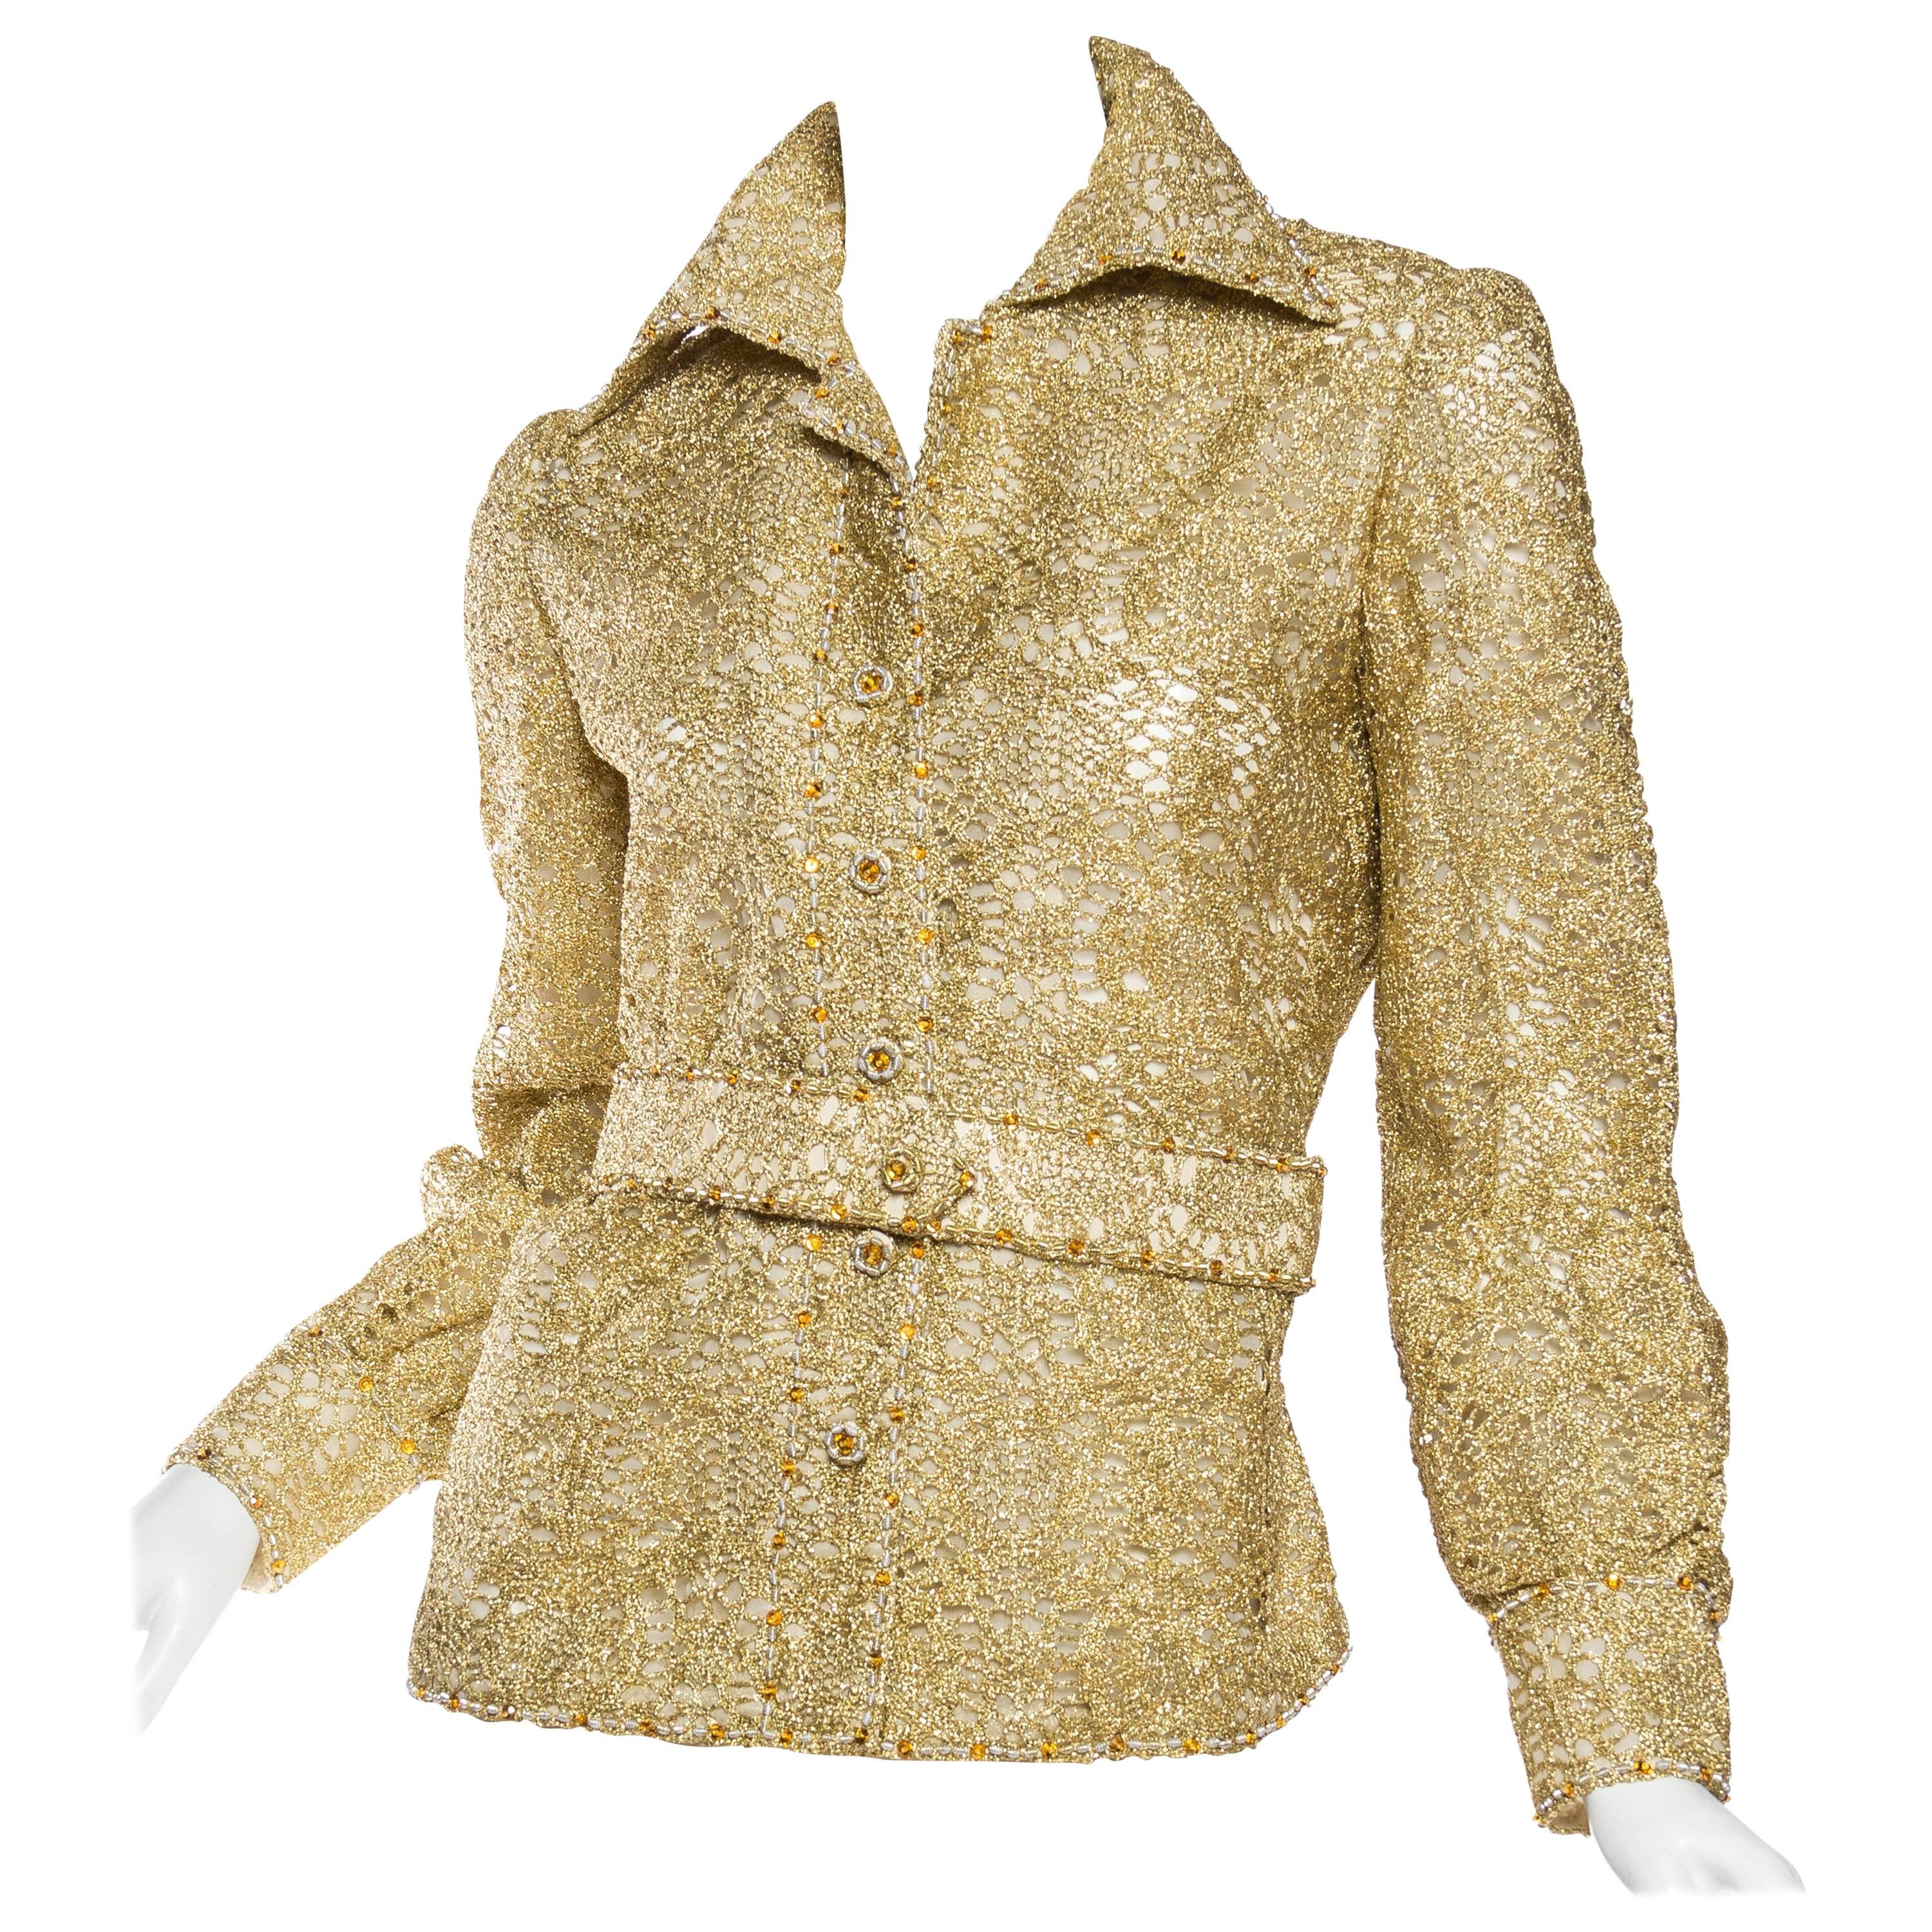 Chemise boutonnée en soie et dentelle de lurex dorée des années 1970 avec ceinture en tissu autoportante de cristaux